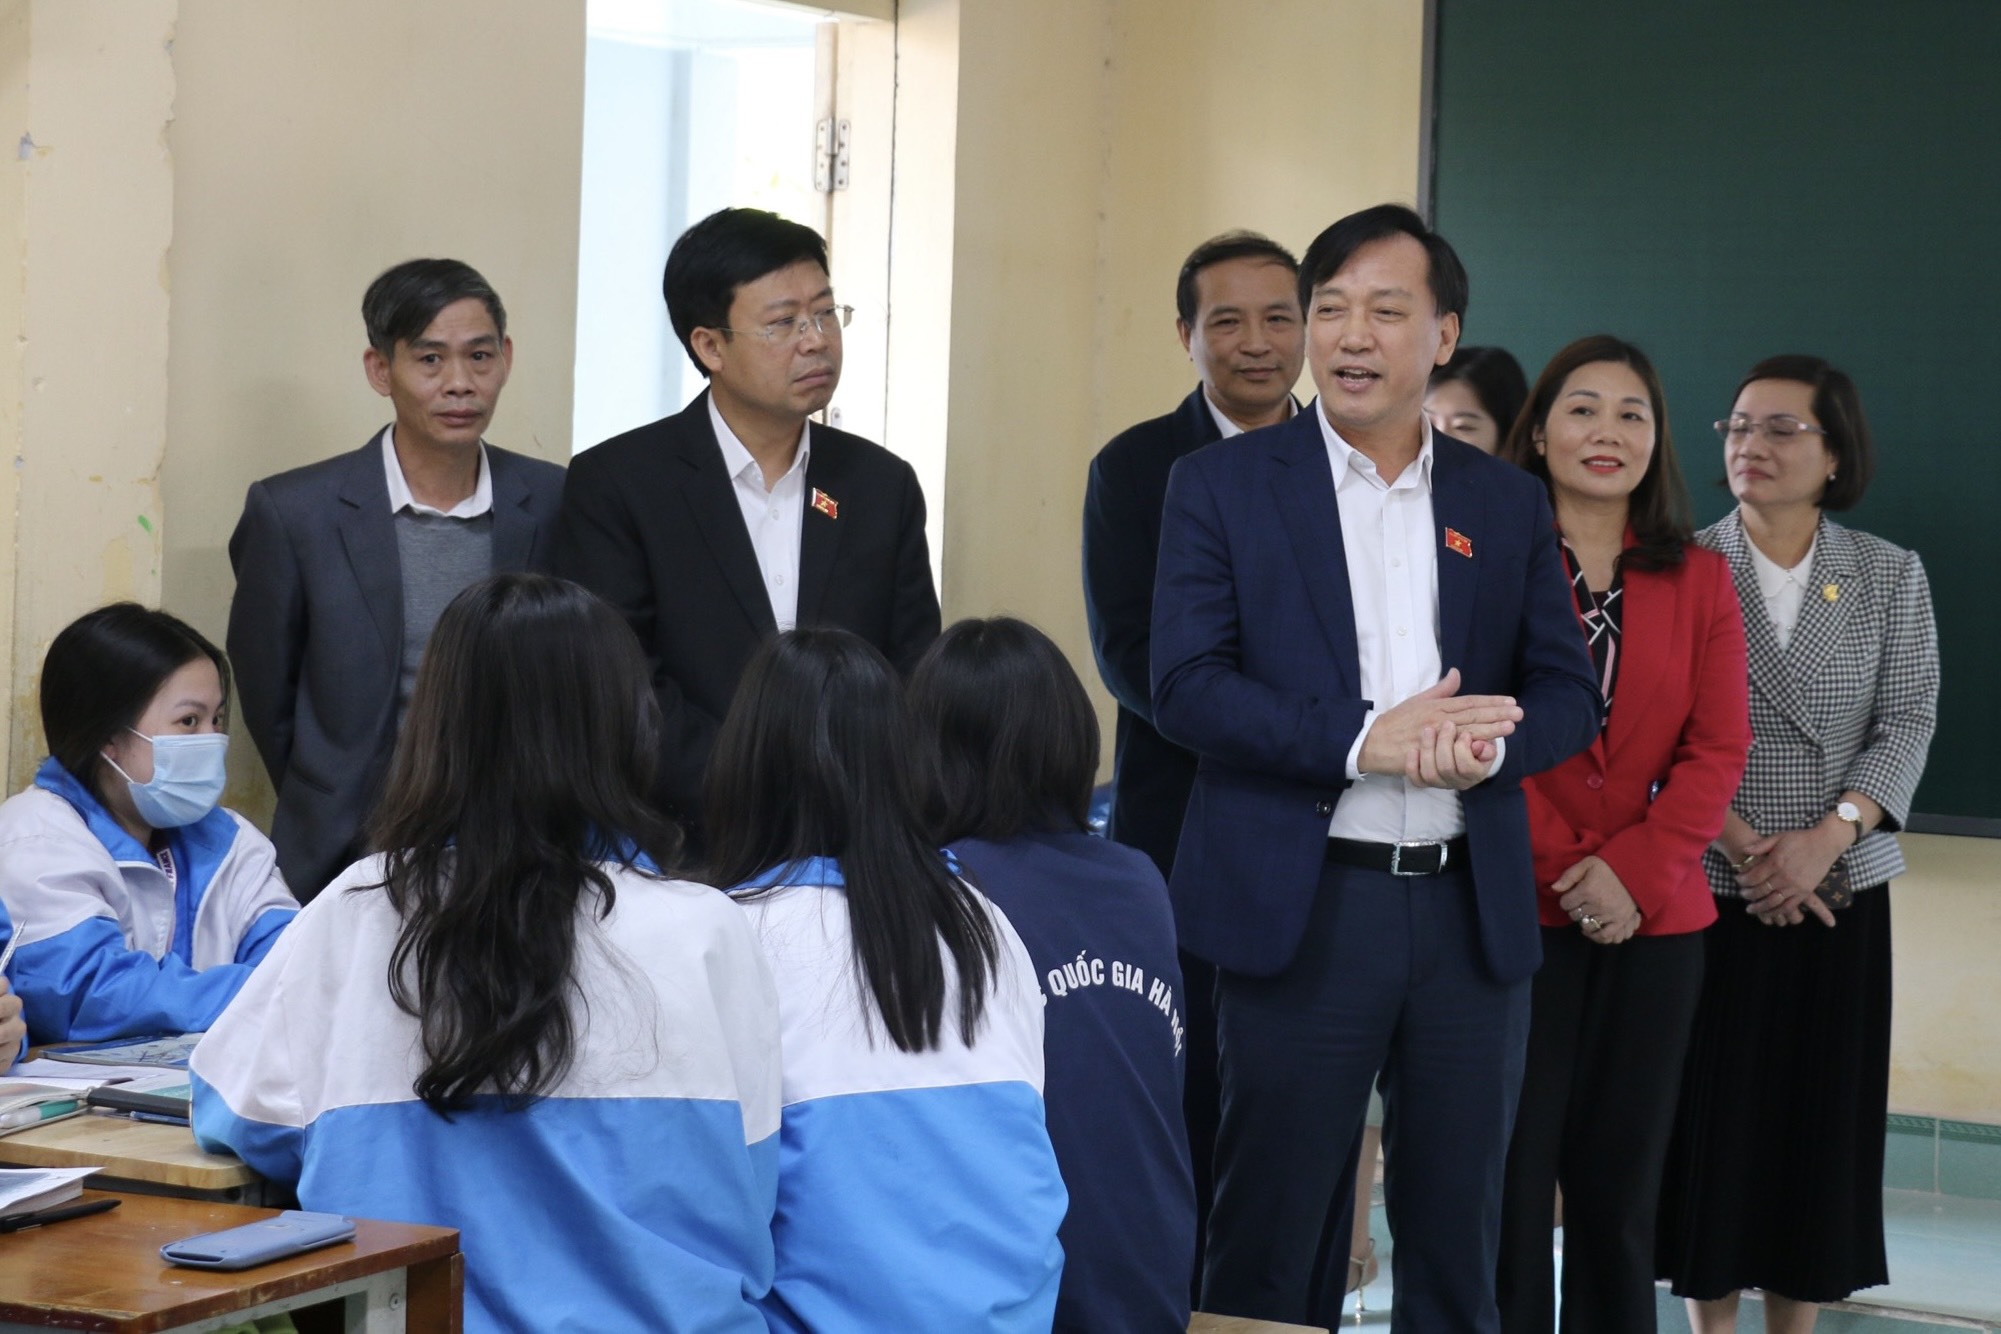 Đoàn giám sát thăm lớp học tại Trường THPT Chuyên Hưng Yên.